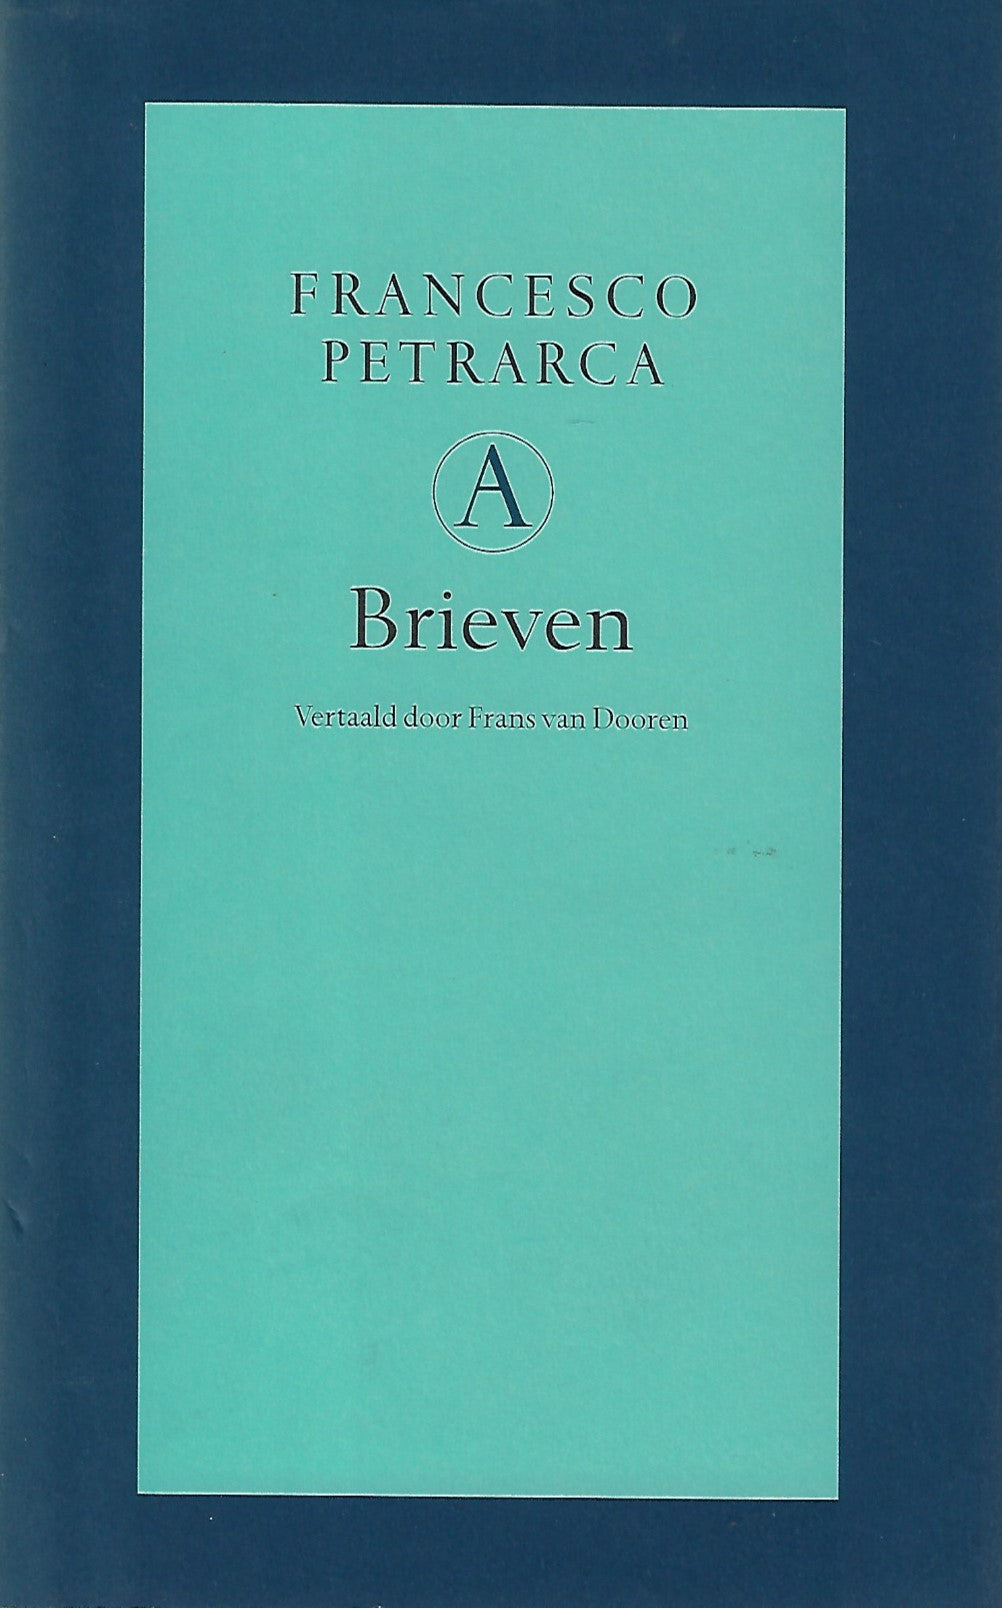 Francesco Petrarca - Brieven